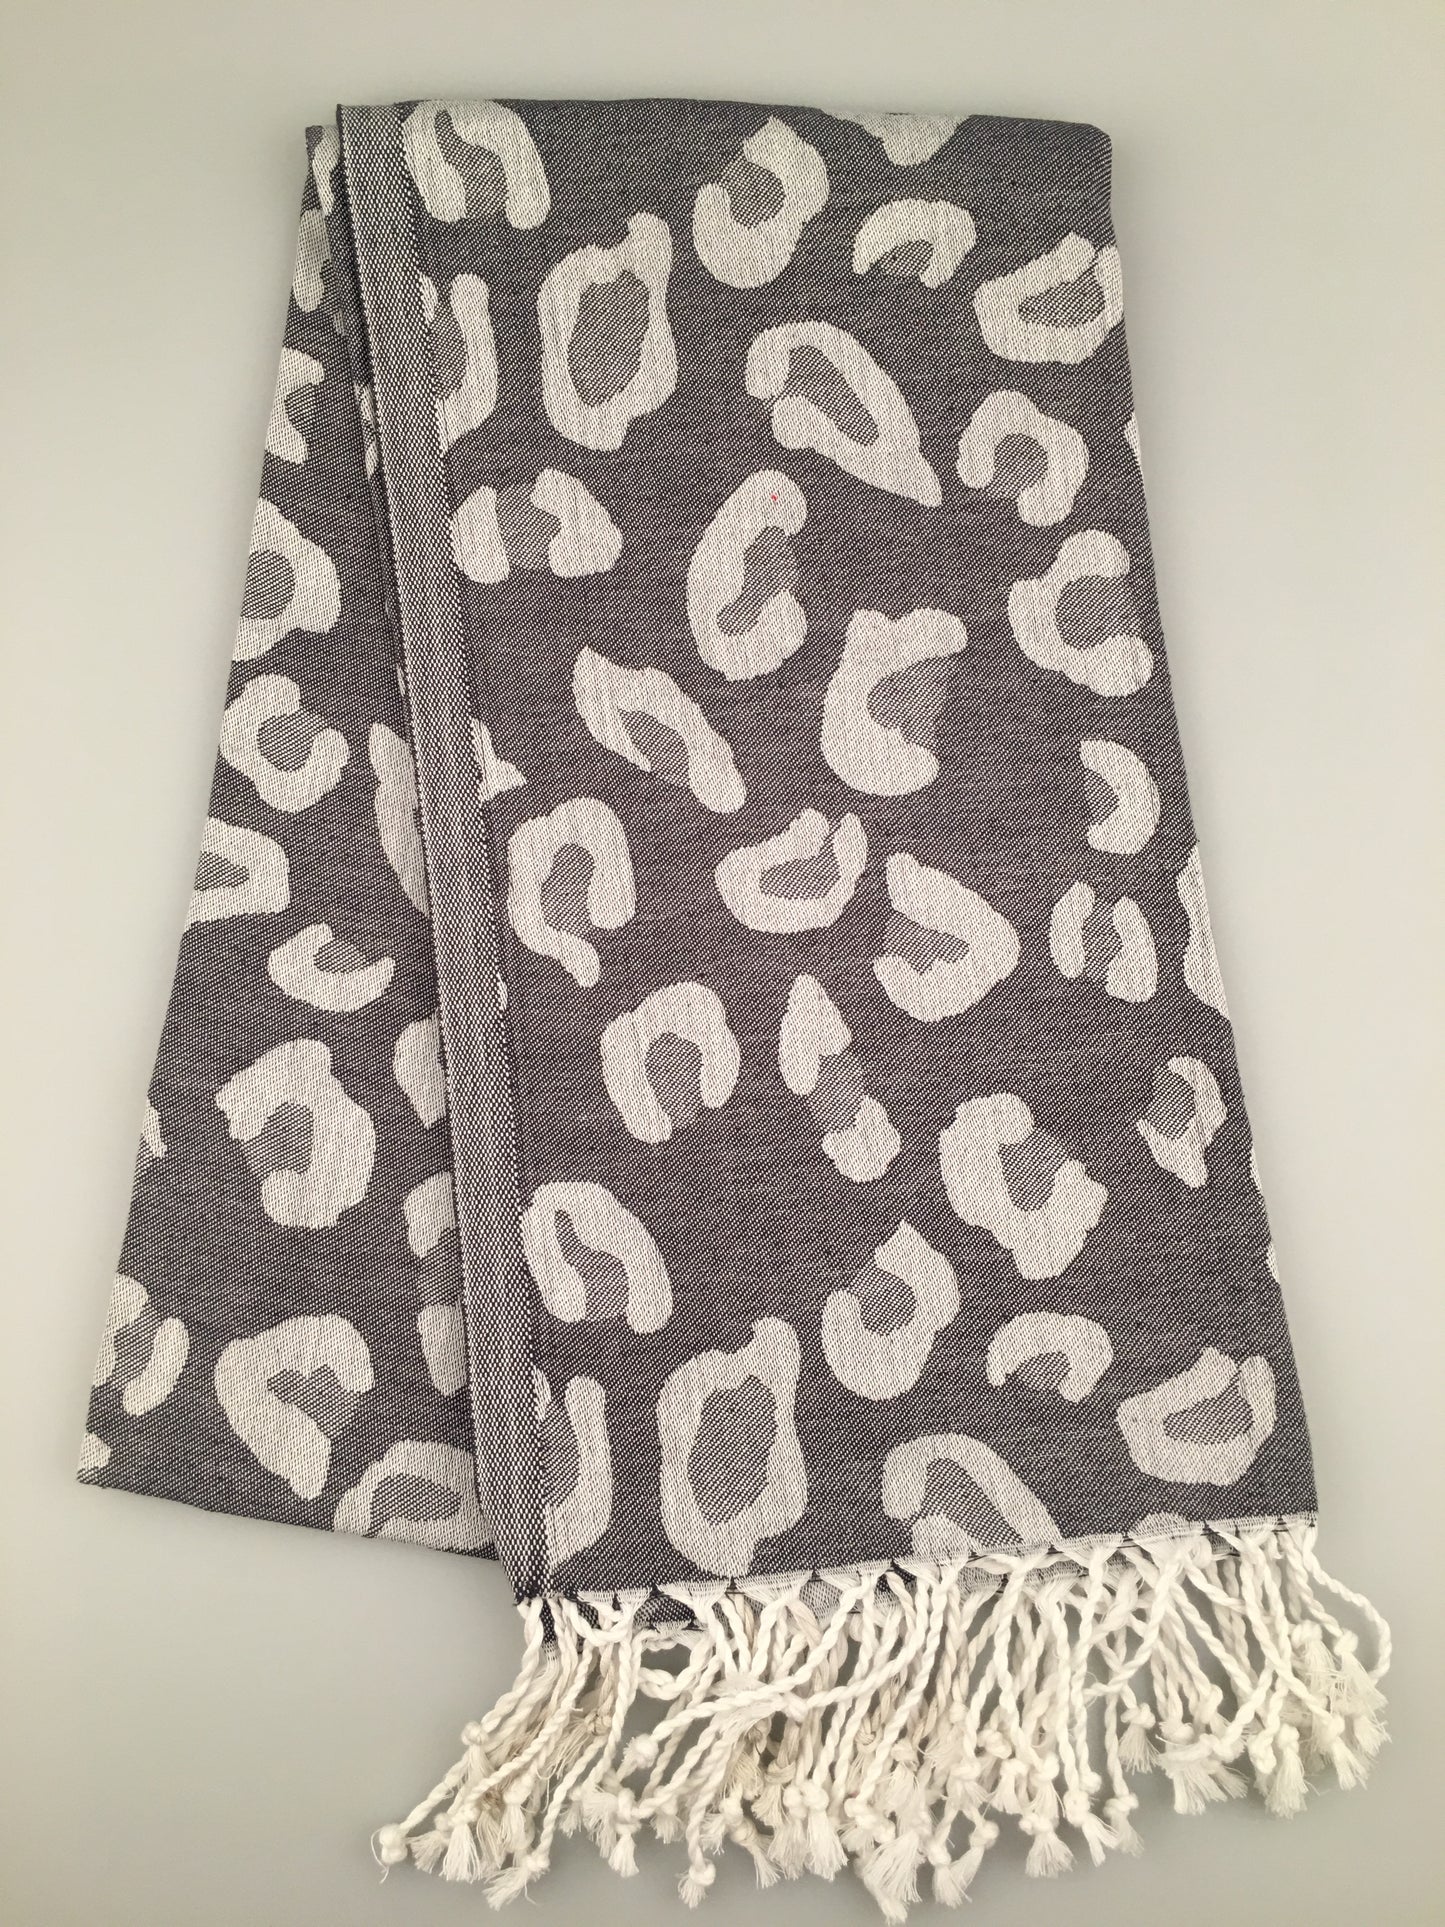 200pcs/LOT Etenna Turkish Towel Jacquard Peshtemal (300g / 400g) - Wholesale Price